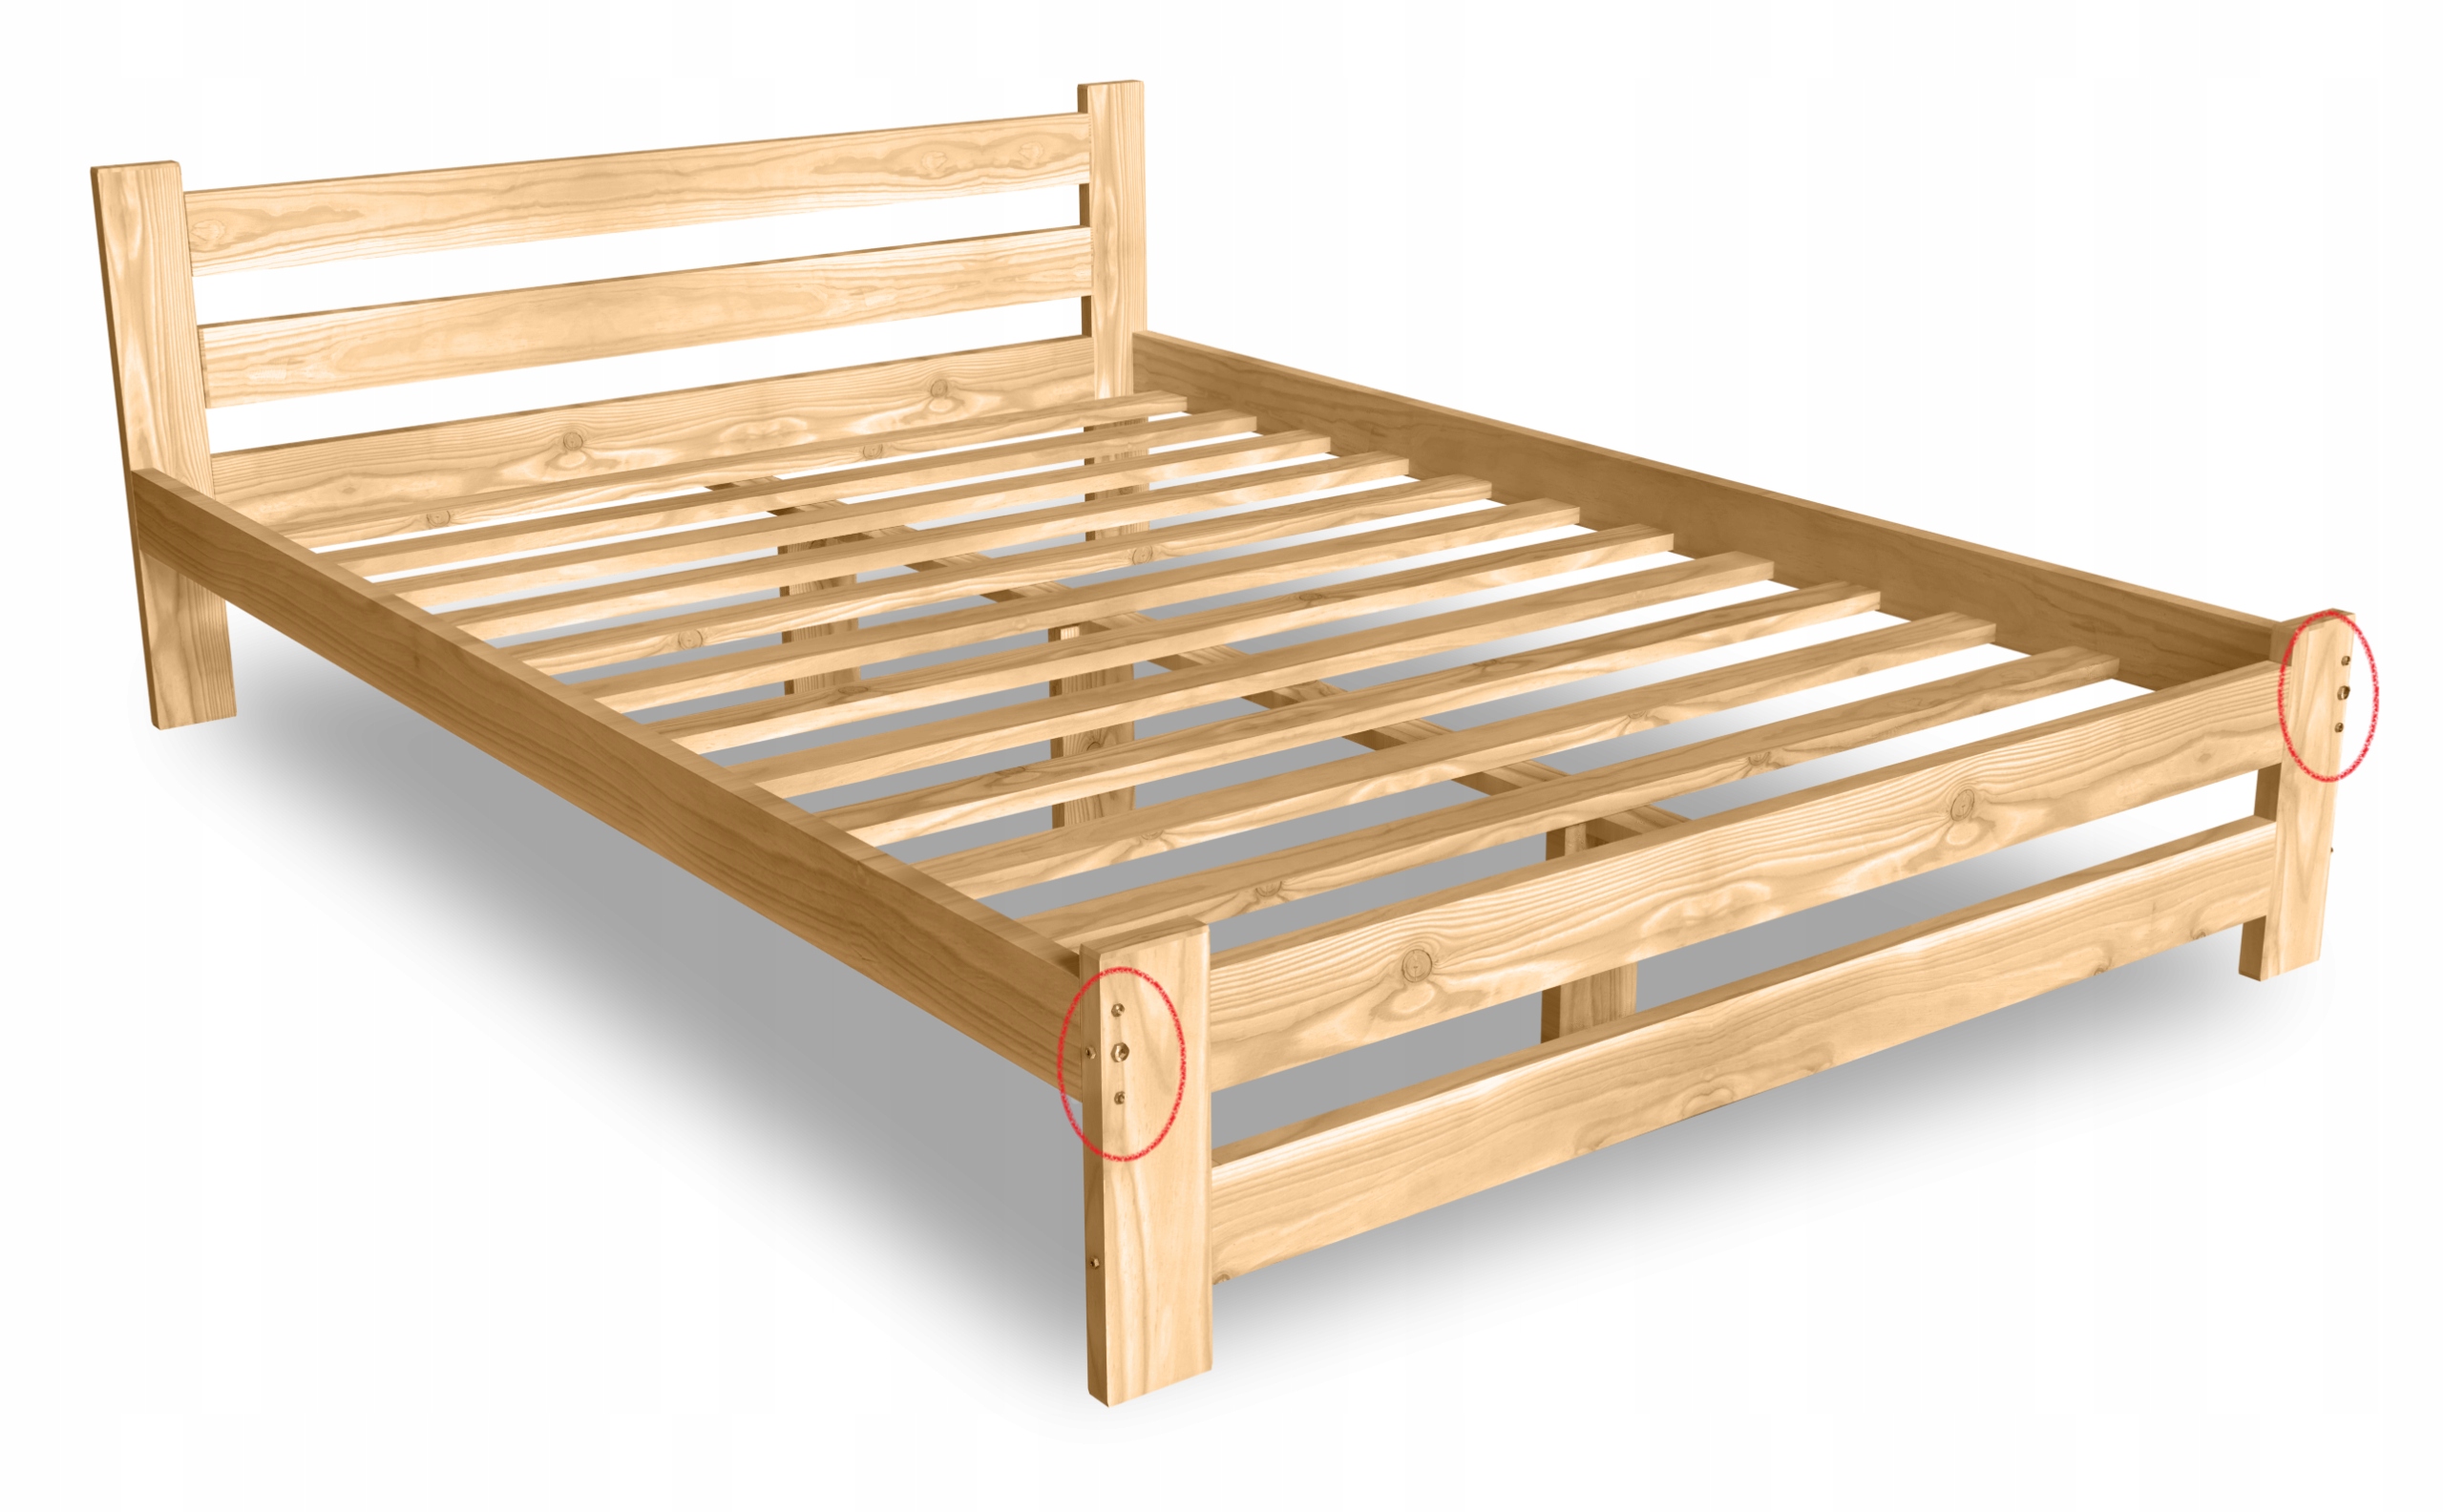 Купить деревянную кровать недорого. Кровать из сосны 120х200. Каркас кровати 120х200. Двуспальная кровать из массива сосны b03-a неокрашенная, 120х200 см, fun Wood. Кровать 120х200 из массива дерева.